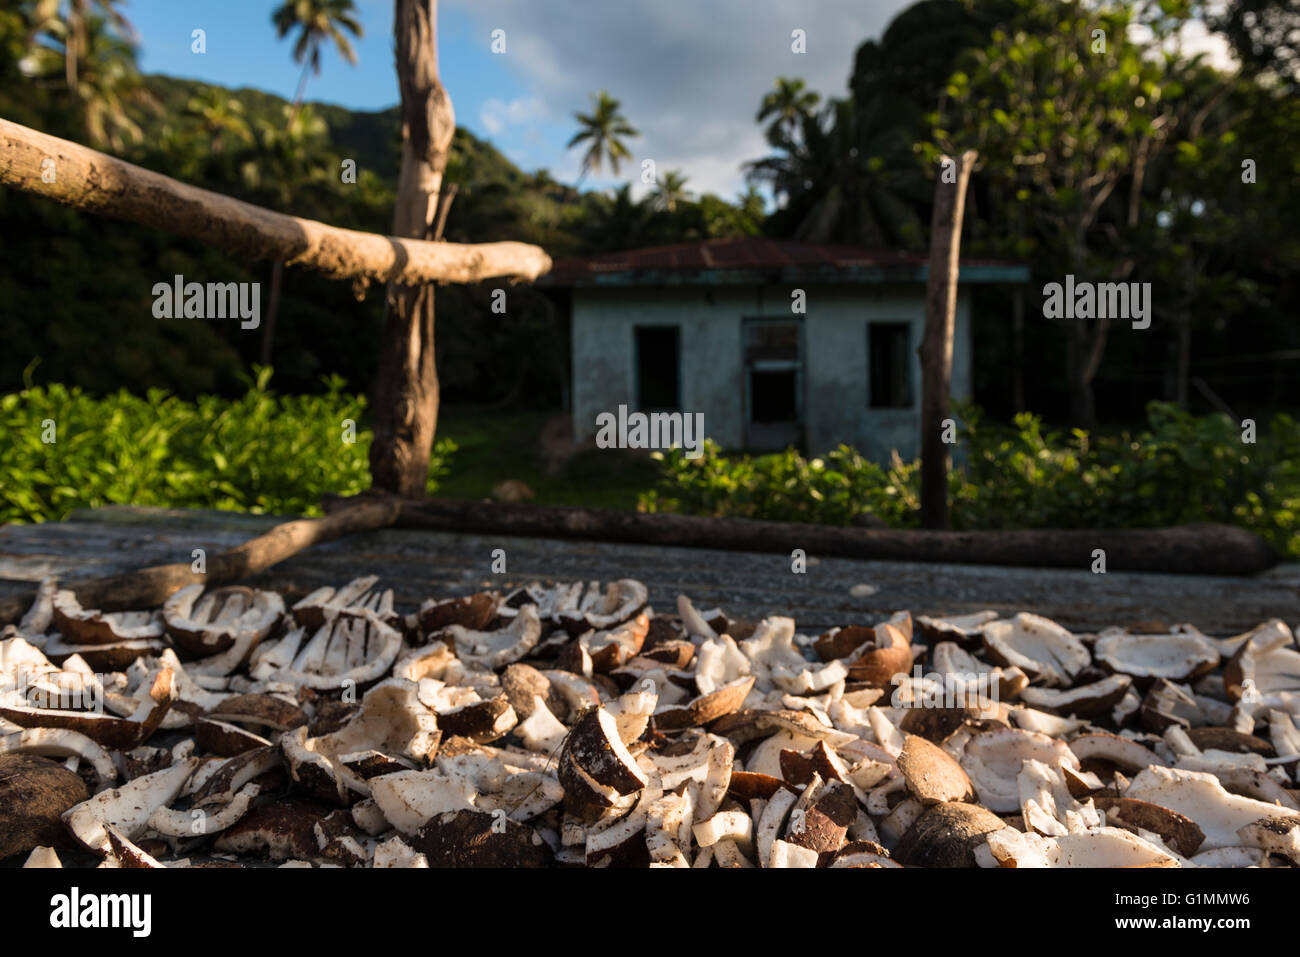 Geschältem Kokosnüsse Stücke trocknen Kopra, am späten Nachmittag Sonne und einem lokalen Haus (Bure) im Dorf Lomati. Matuku, Lau Inseln Fidschi Stockfoto